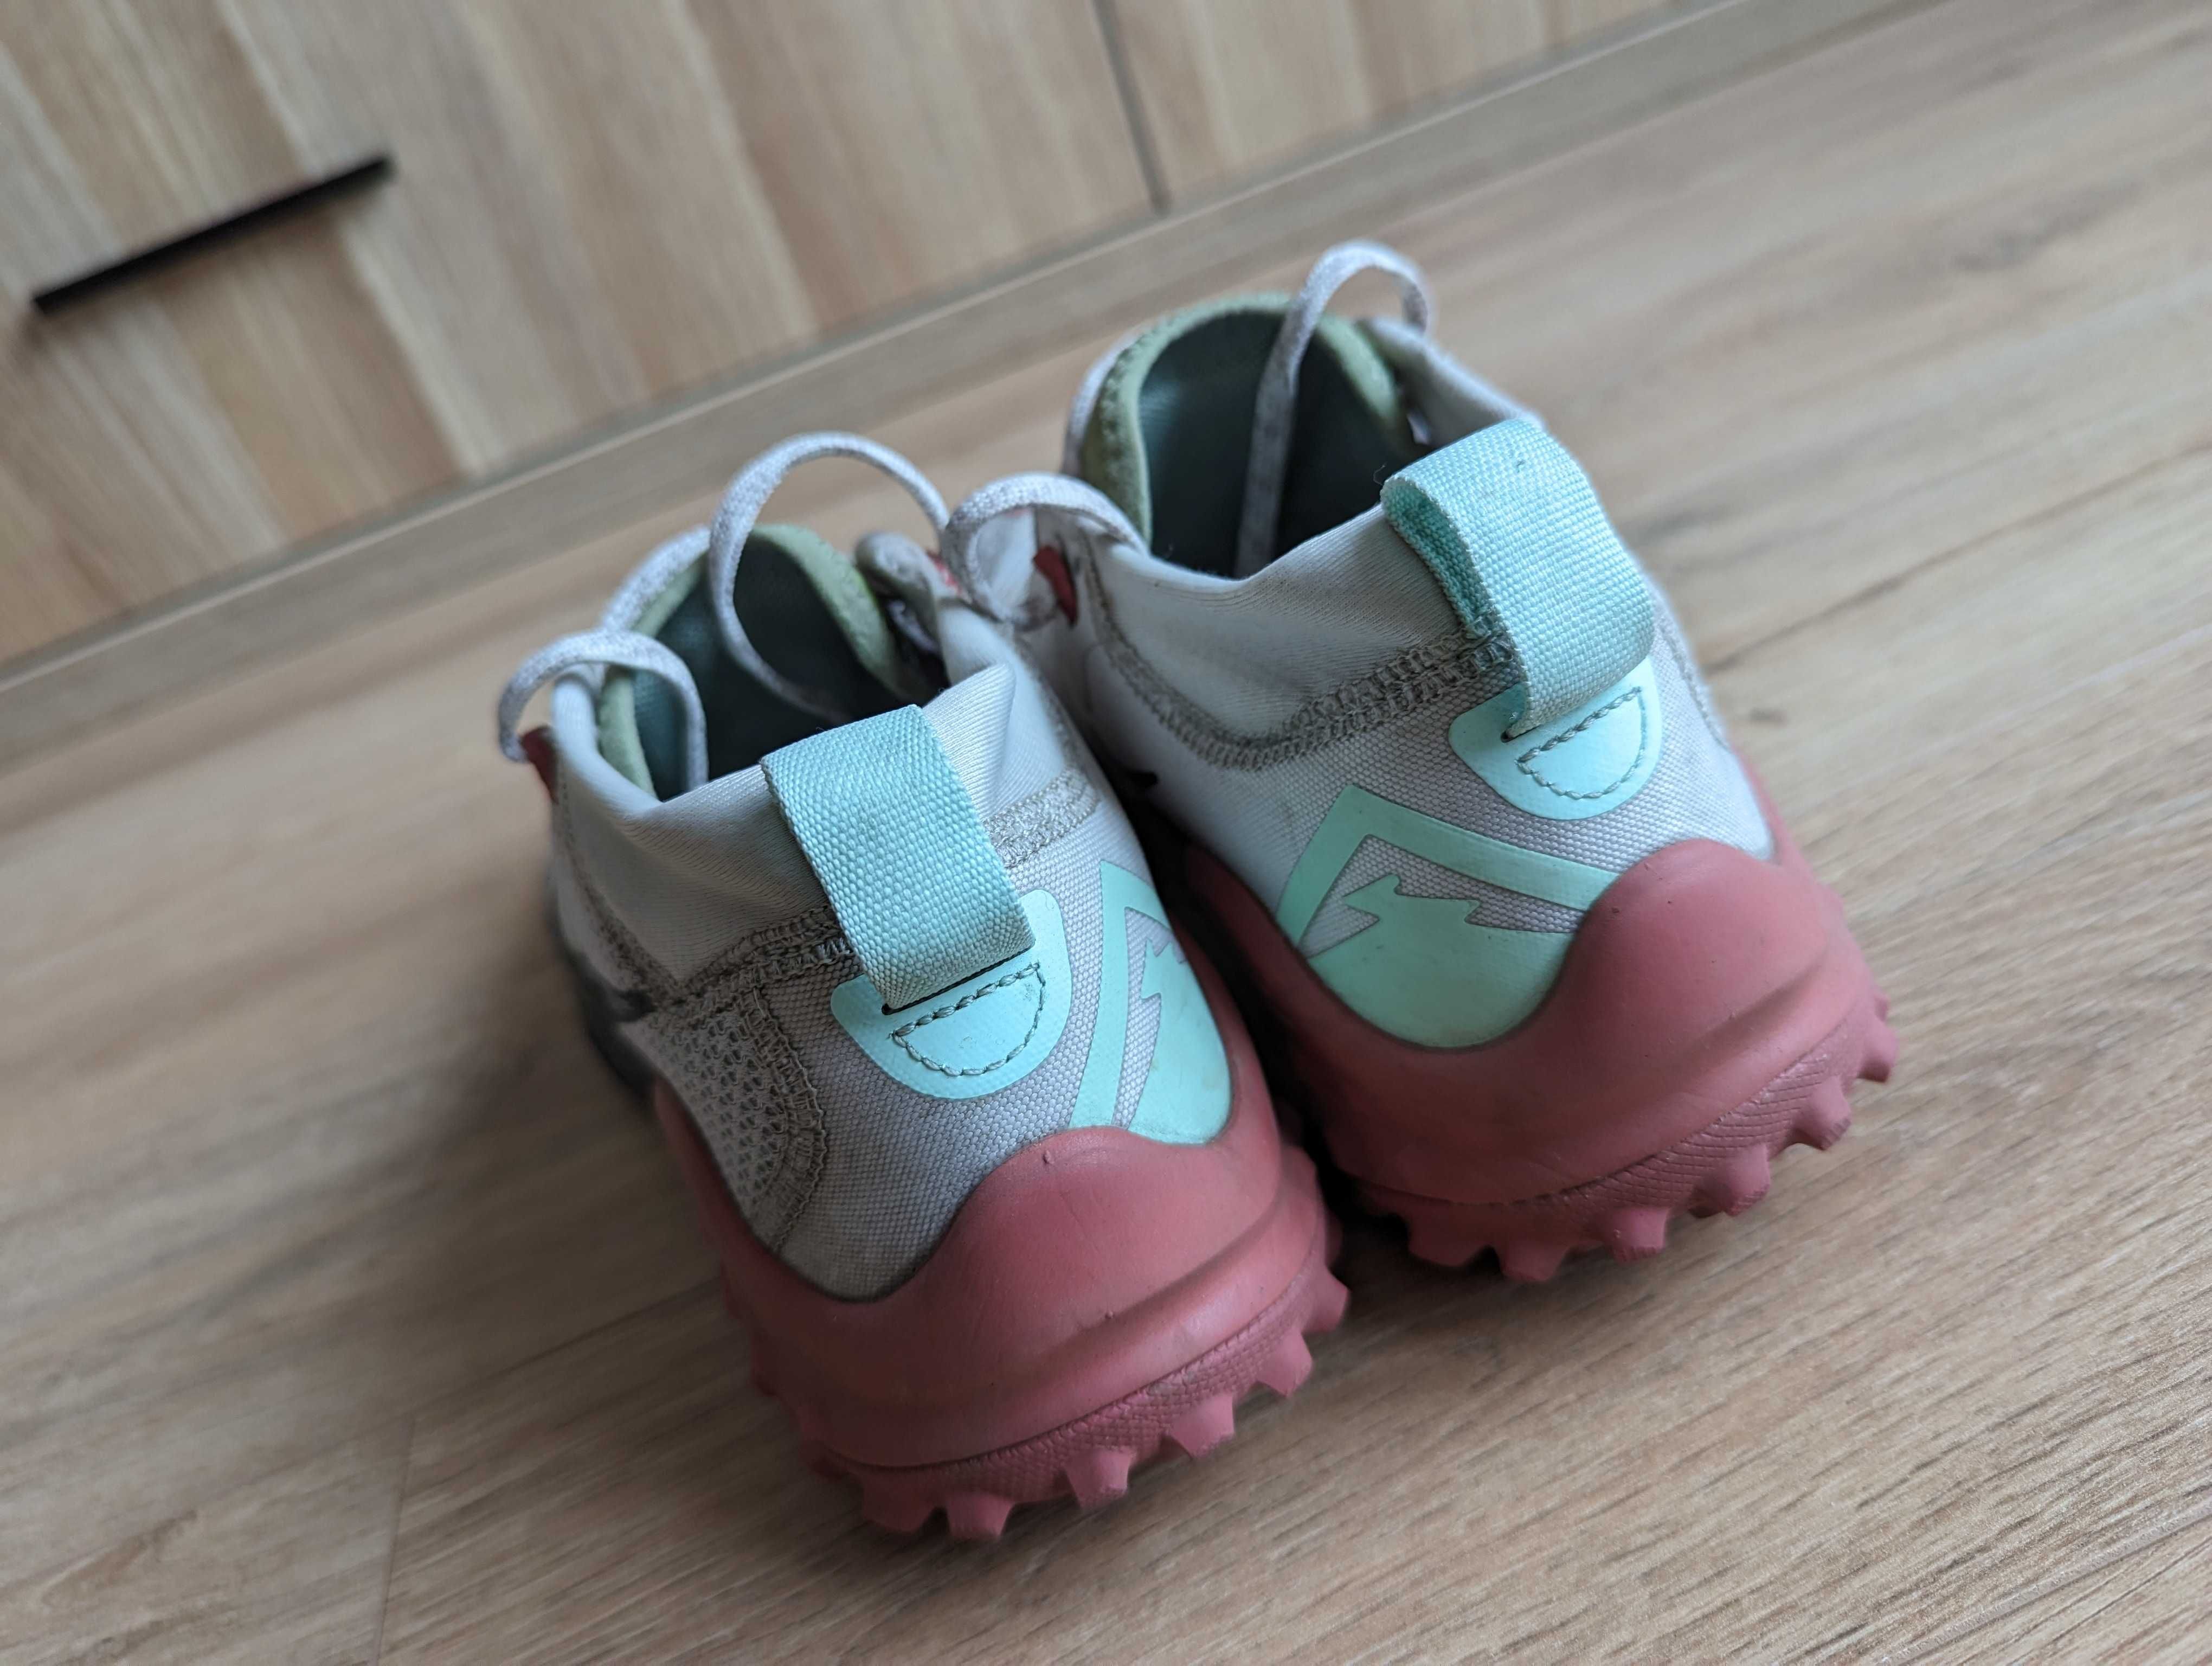 Damskie buty biegowe Nike Wildhorse 7 r. 40,5 (26 cm) przebieg 80 km